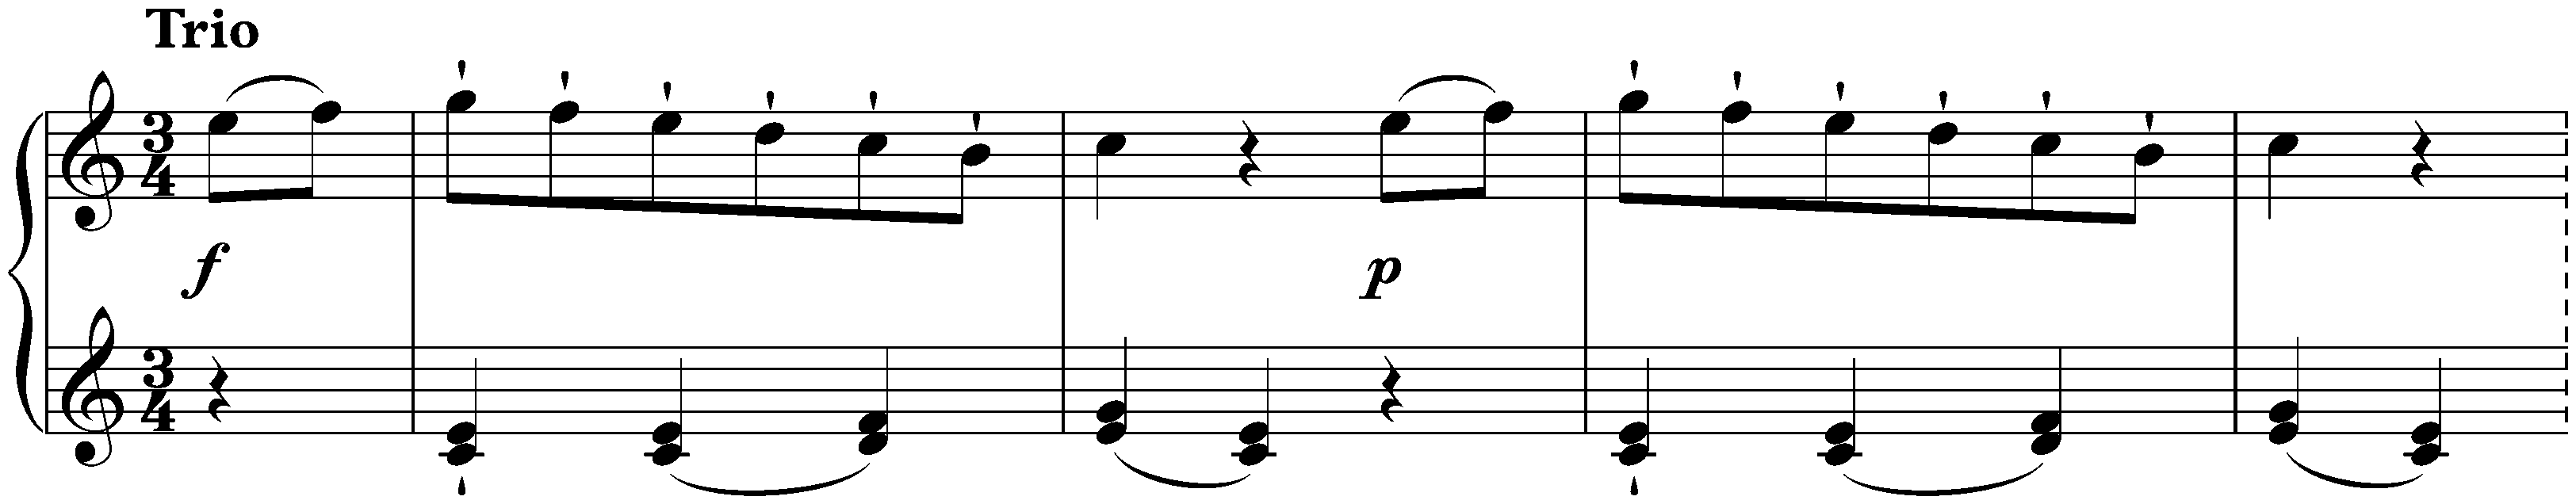 Minuet in C major, KV 61g no. 2